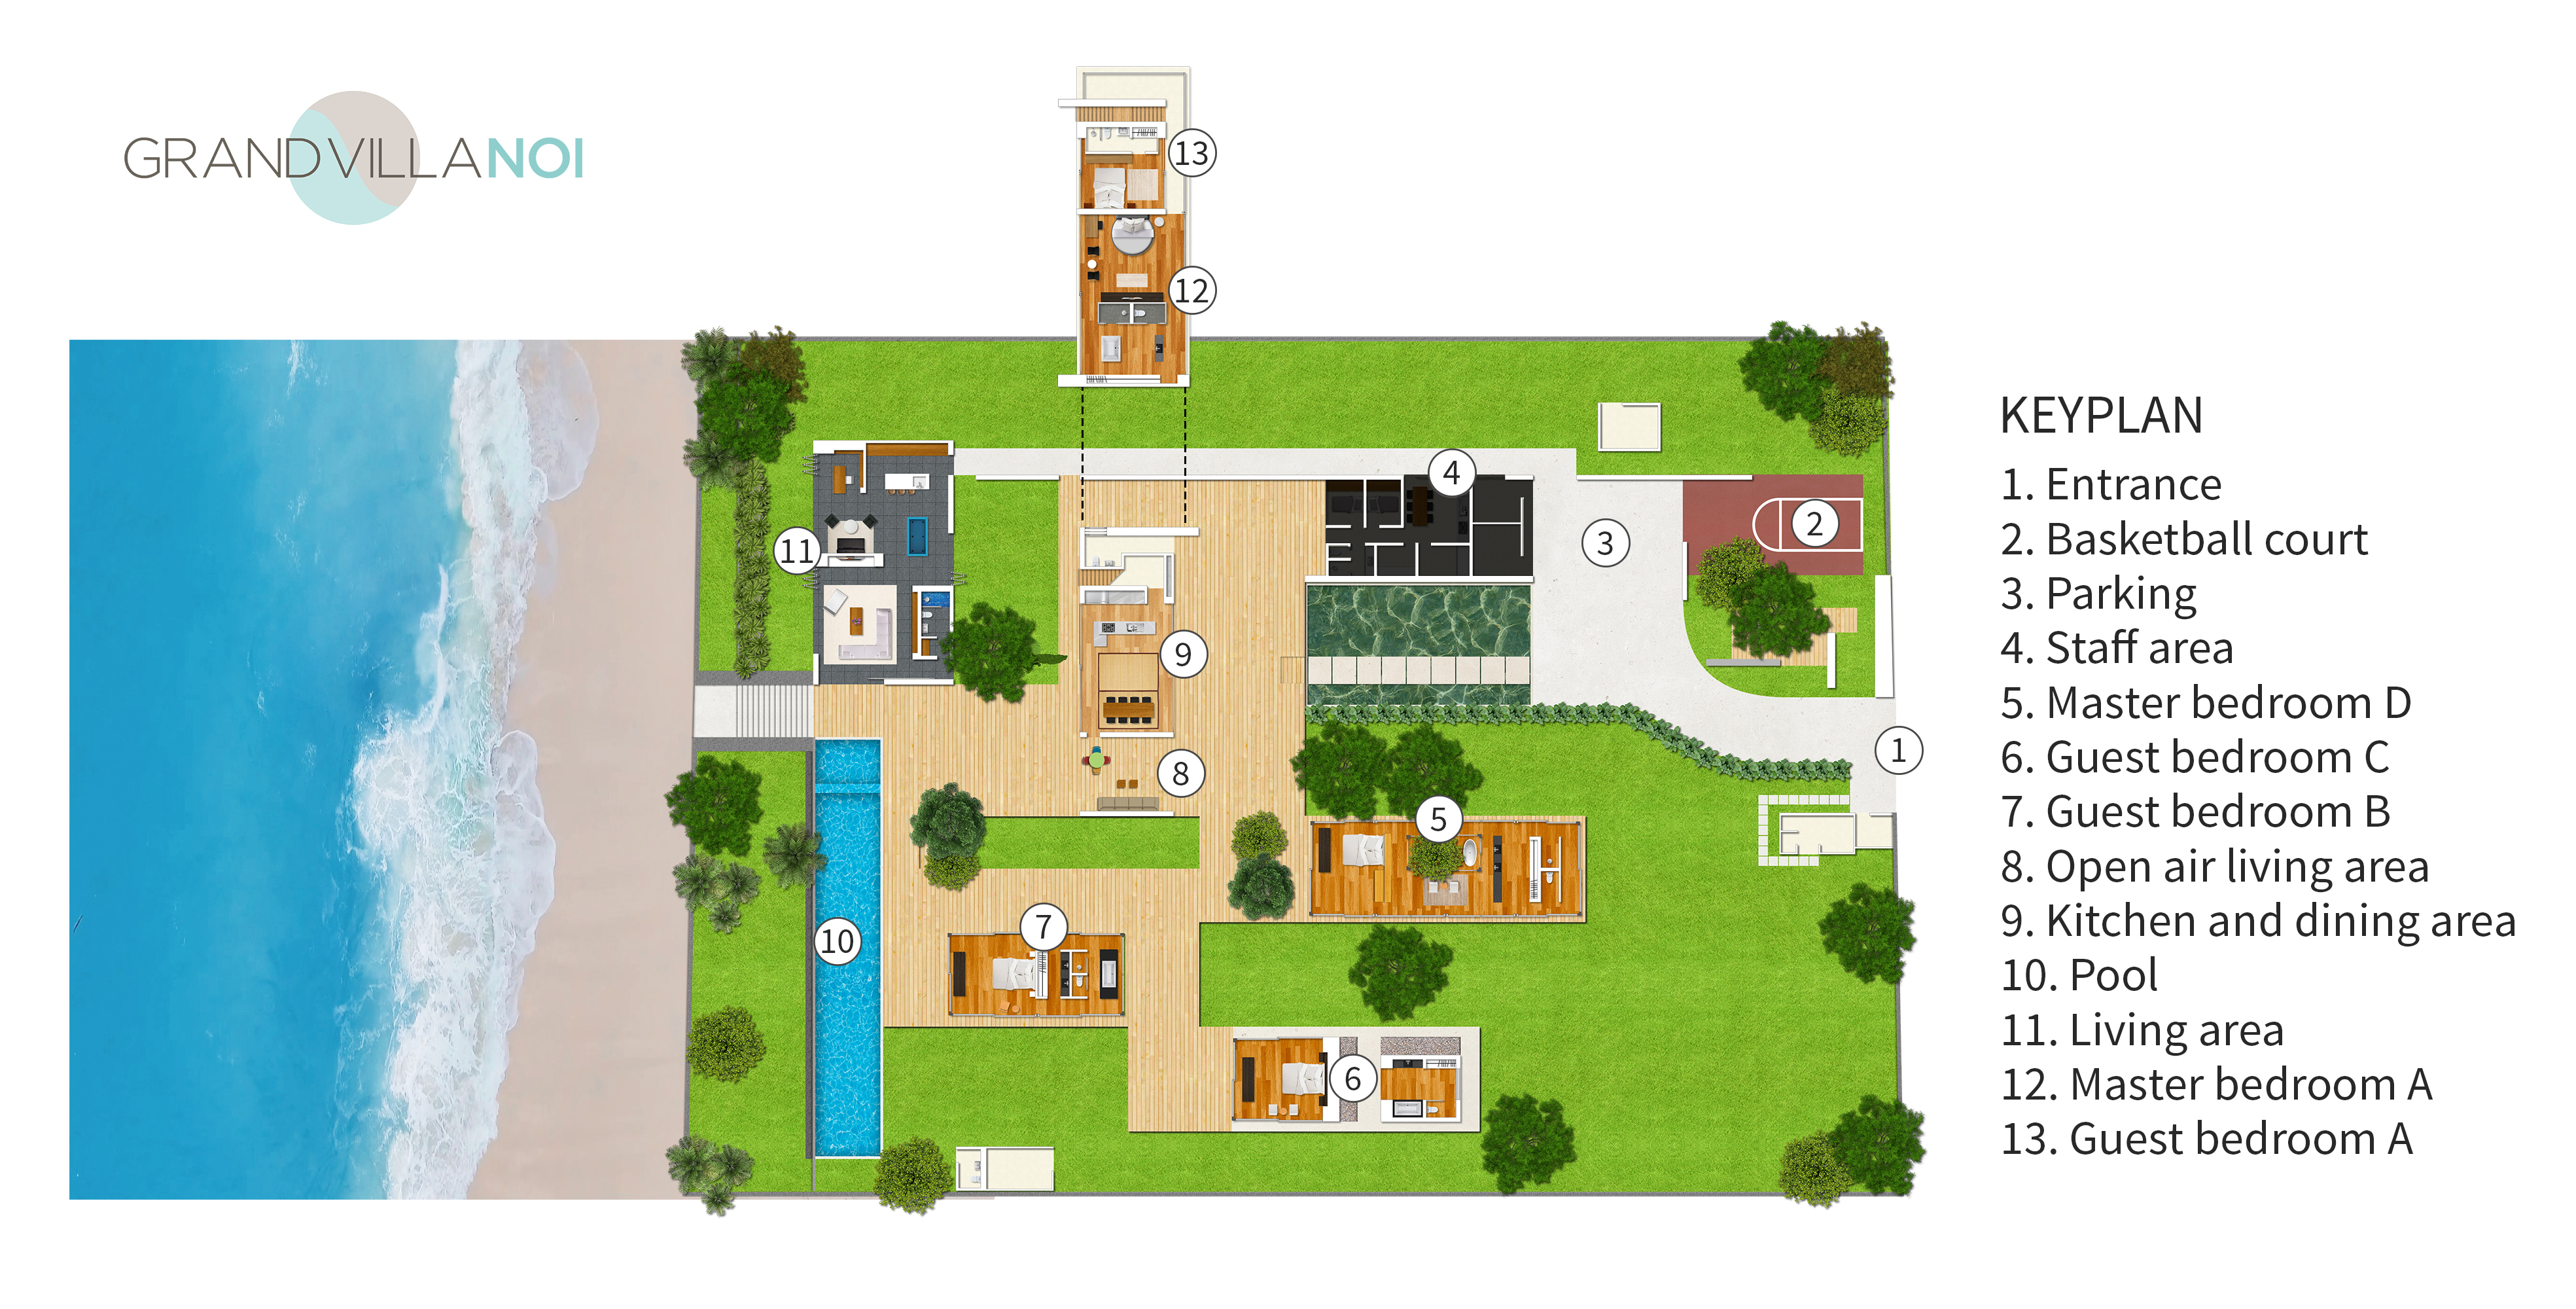 Grand Villa Noi - Floorplan